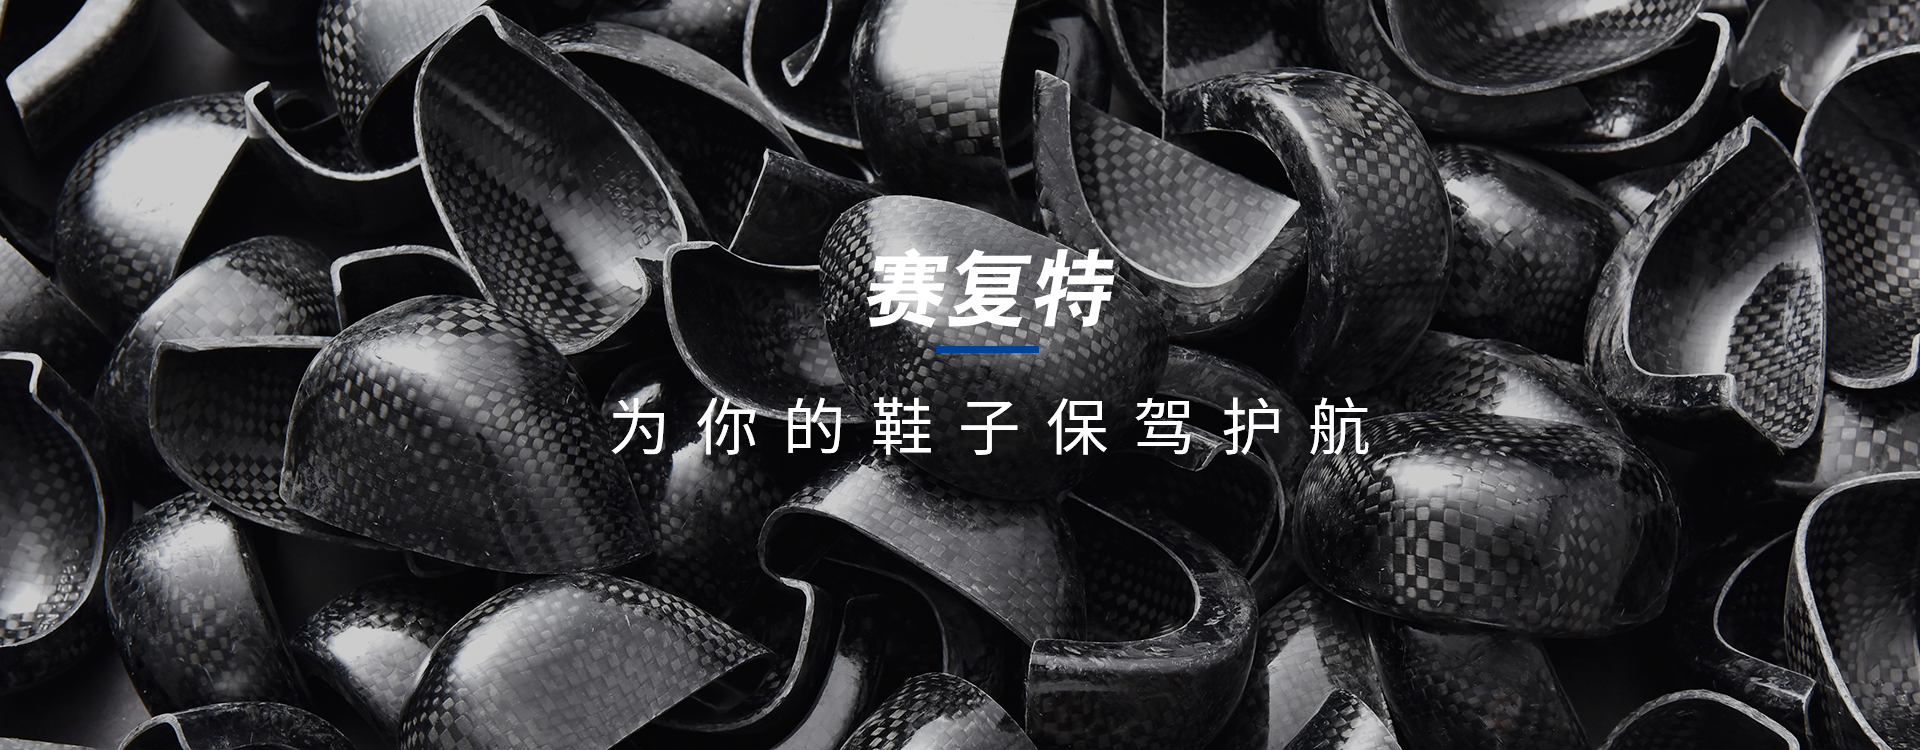 钢鞋头-钢中底鞋垫-复合材料鞋头-永康市赛复特工贸有限公司